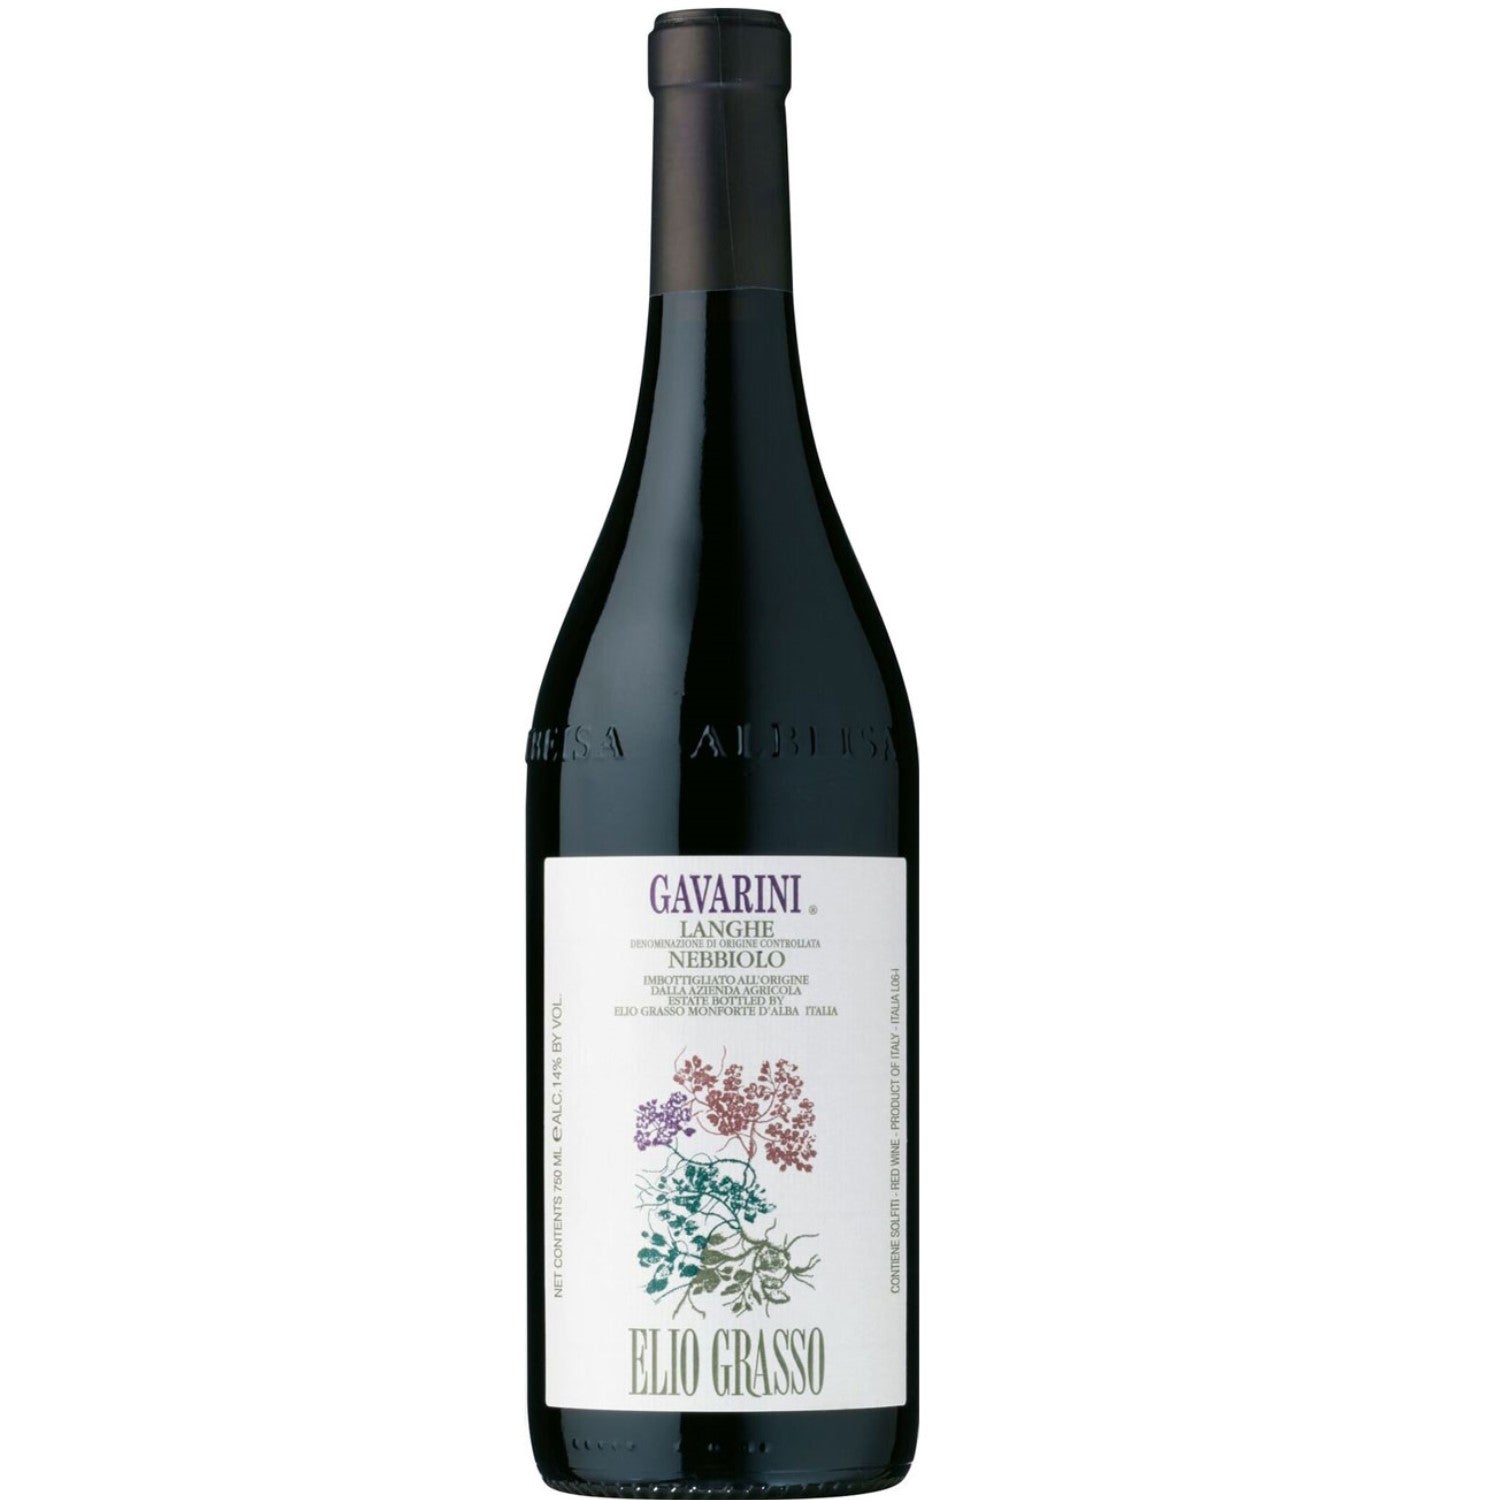 Elio Grasso Gavarini Langhe Nebbiolo Rotwein Wein trocken DOC Italien (3 x 0,75l) - Versanel -